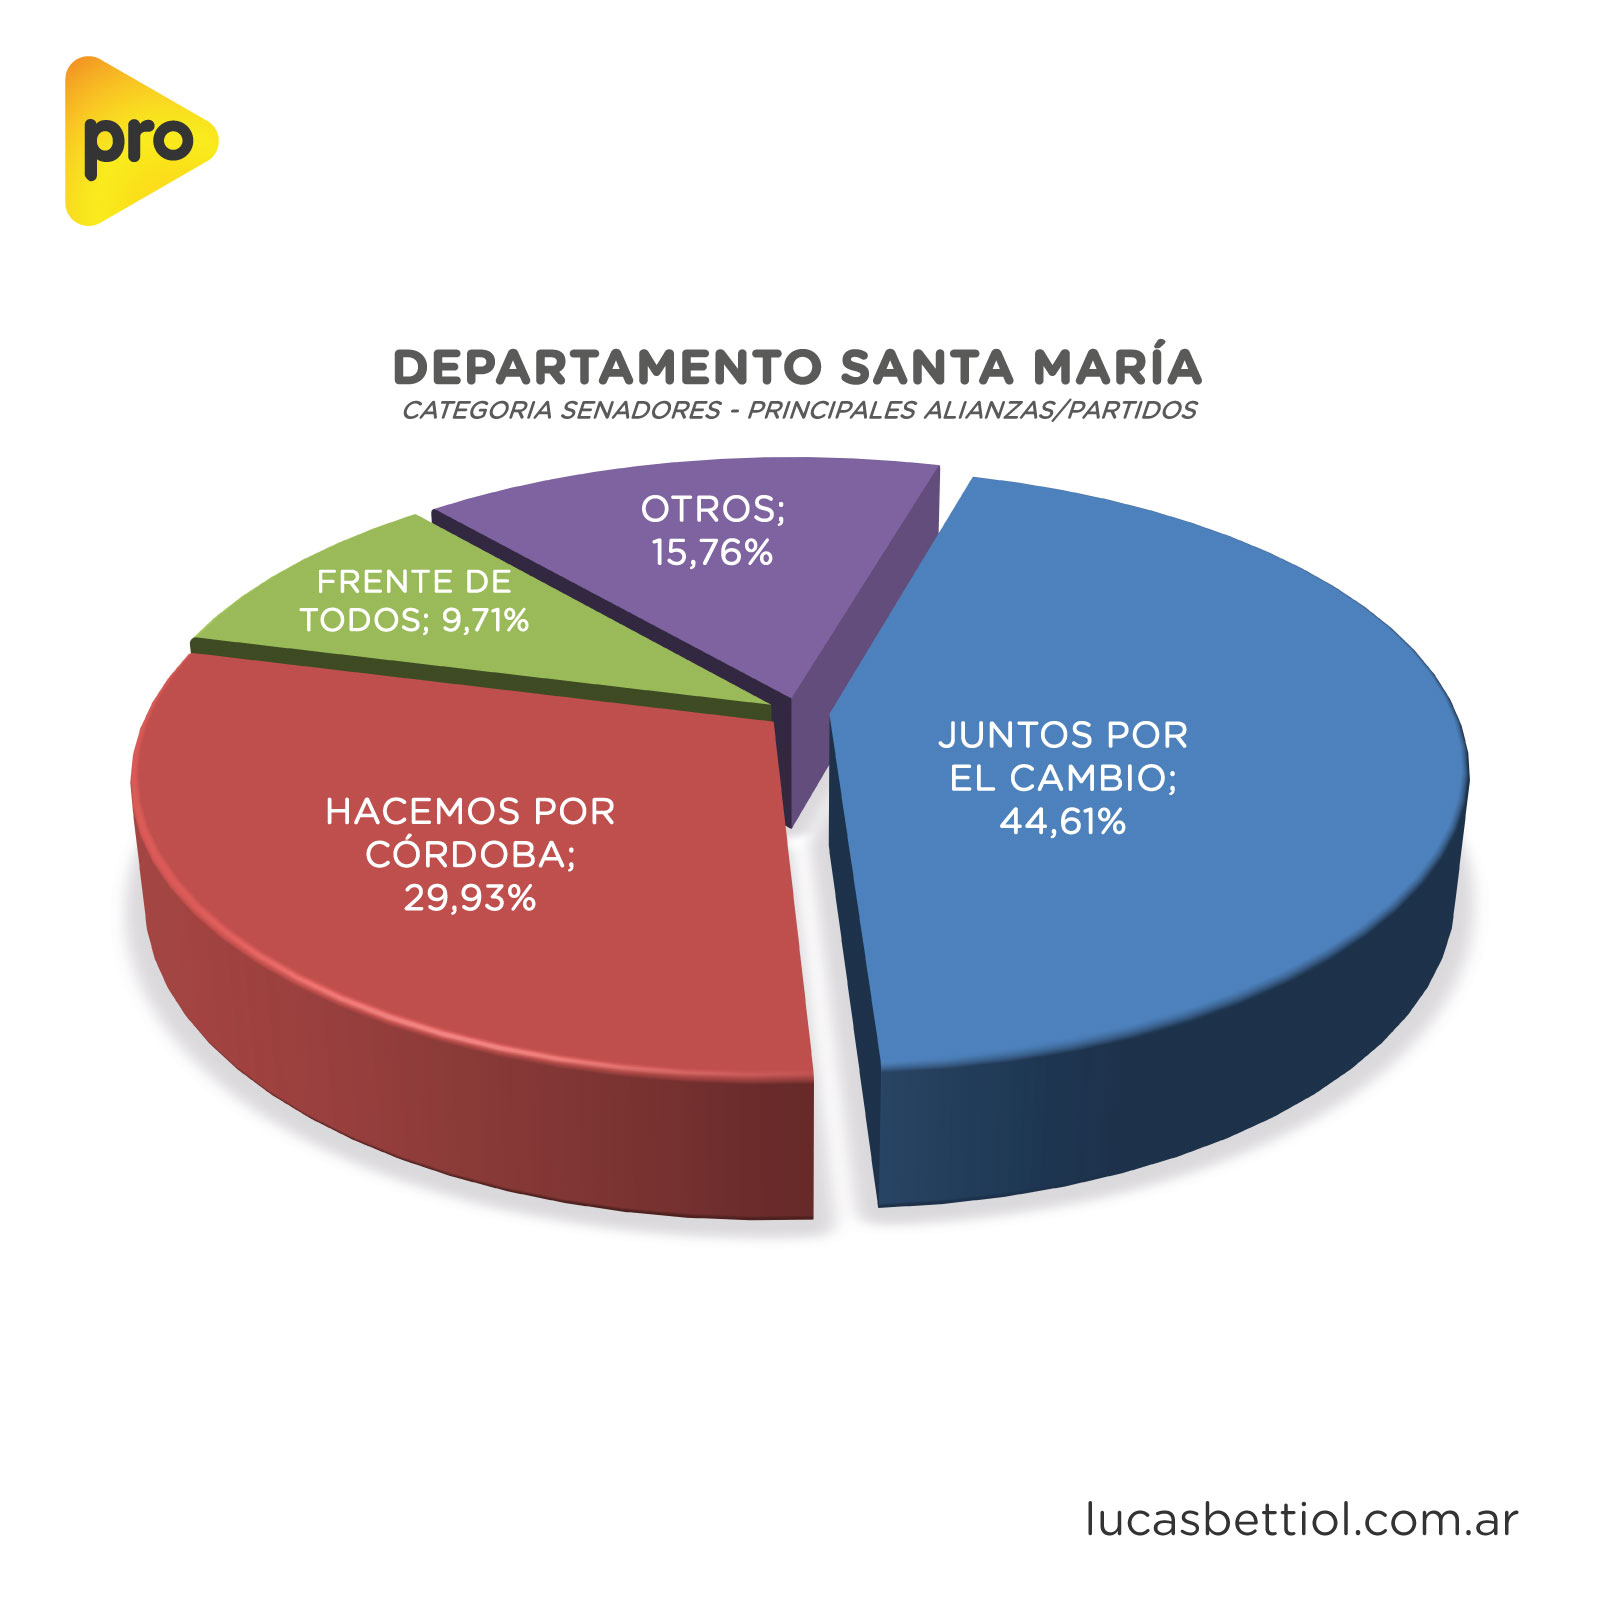 Elecciones PASO 2021 - Categoría Senadores - Gráfica de porcentuales que obtuvieron en el Departamento Santa María las principales alianzas